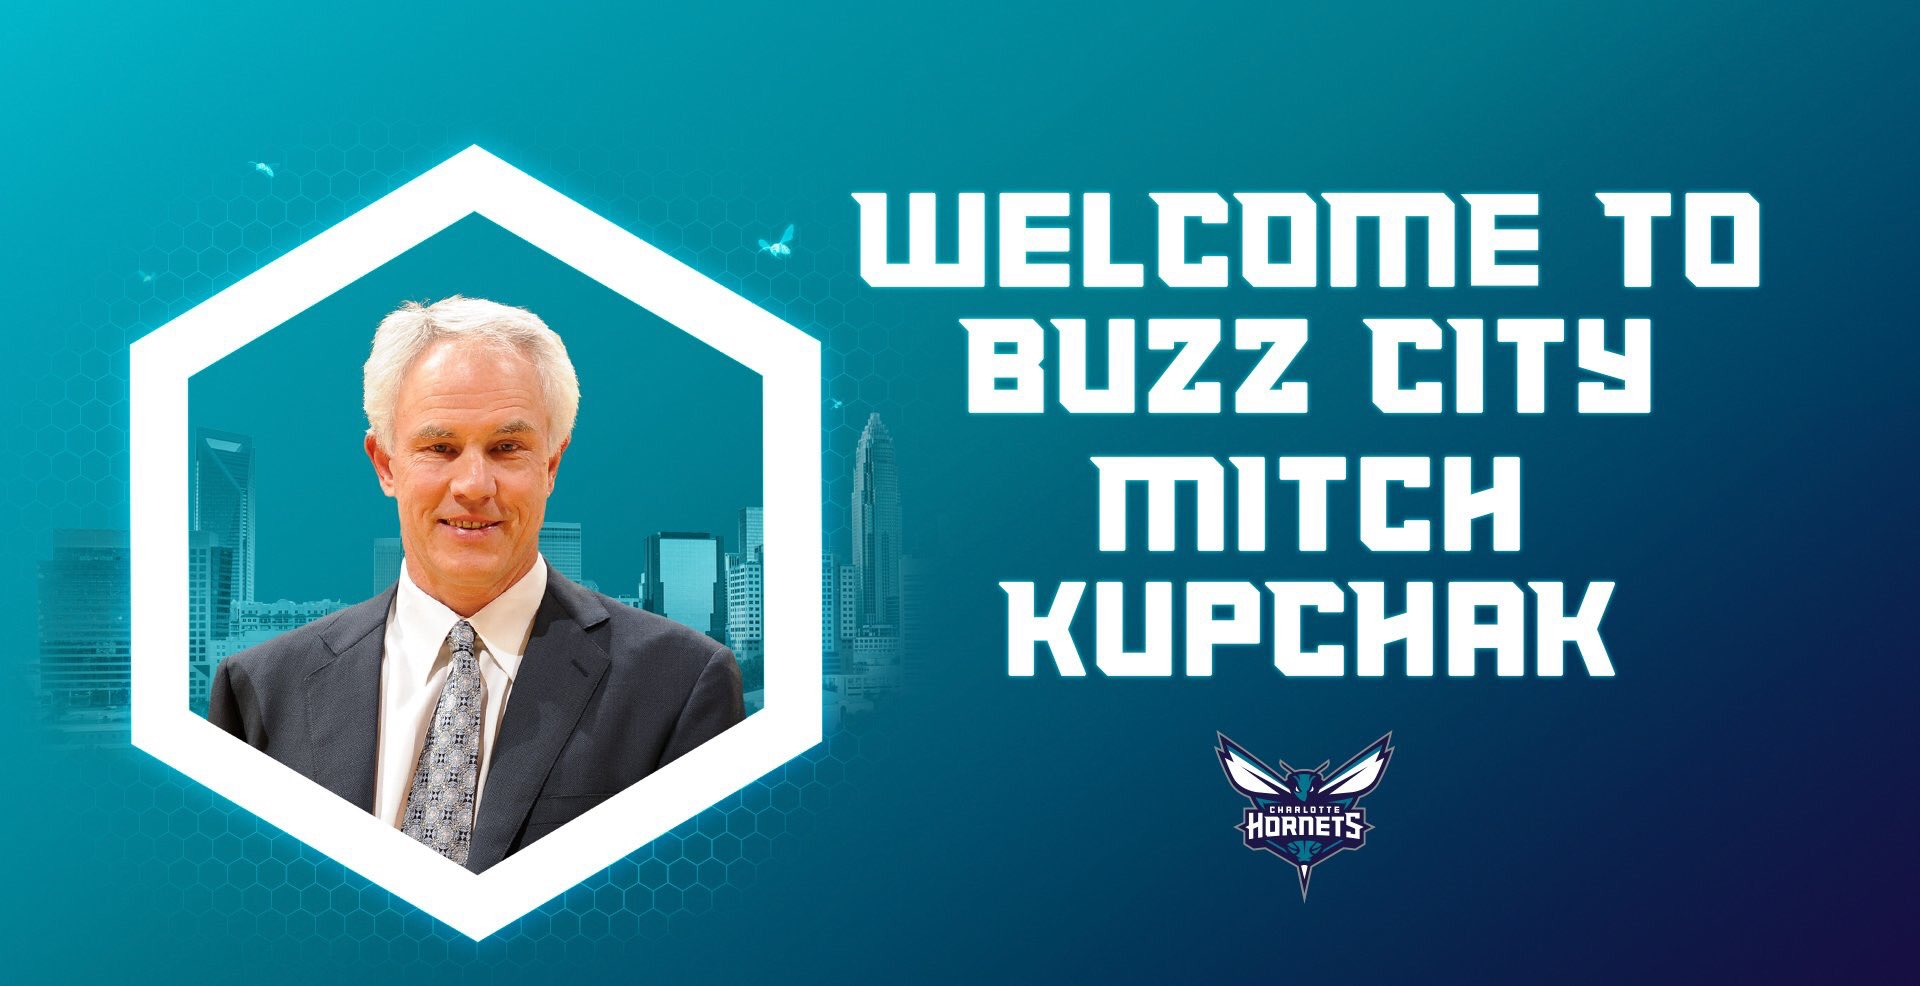 Mitch Kupchak